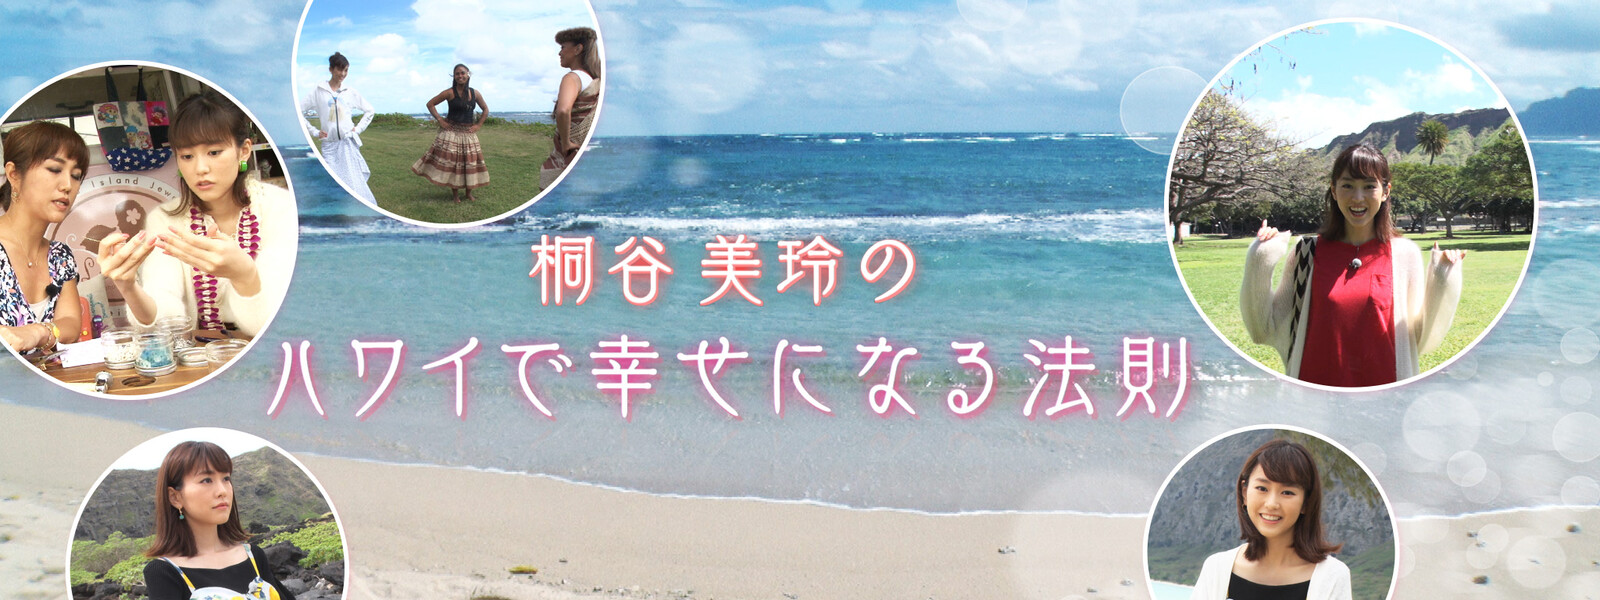 桐谷美玲のハワイで幸せになる法則 動画